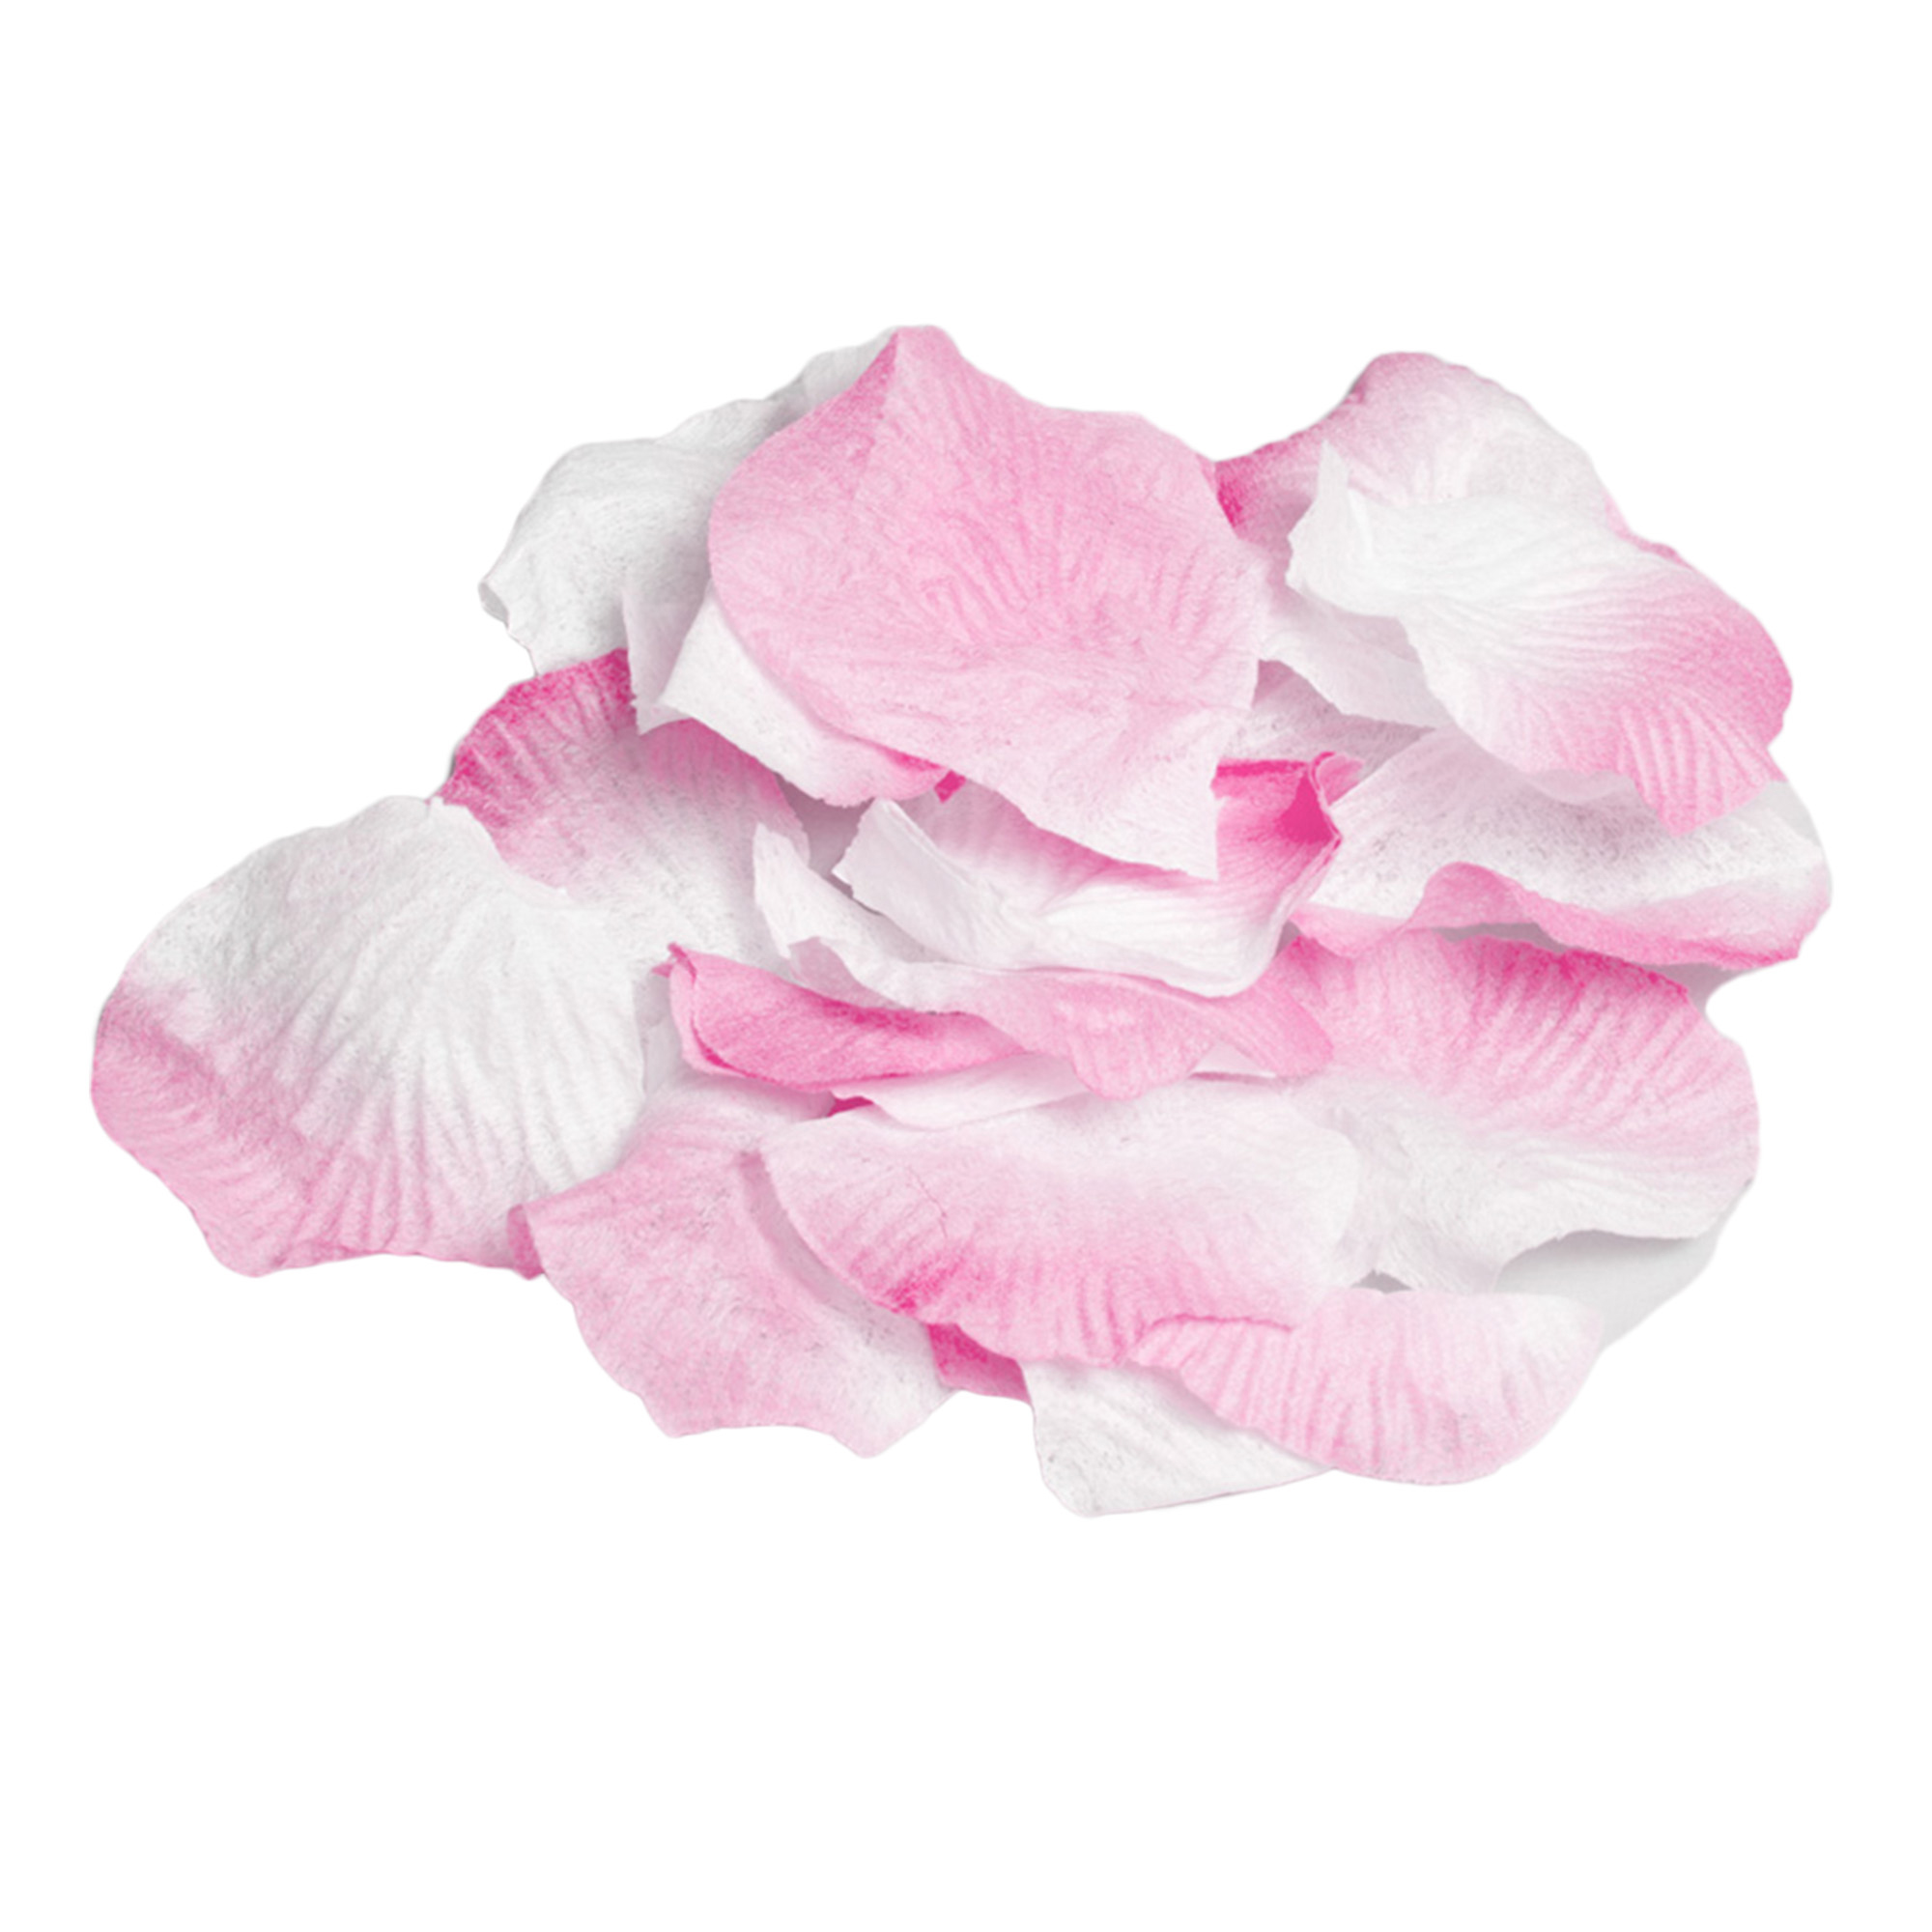 Silk Rose Petals 400pc/bag - Pink